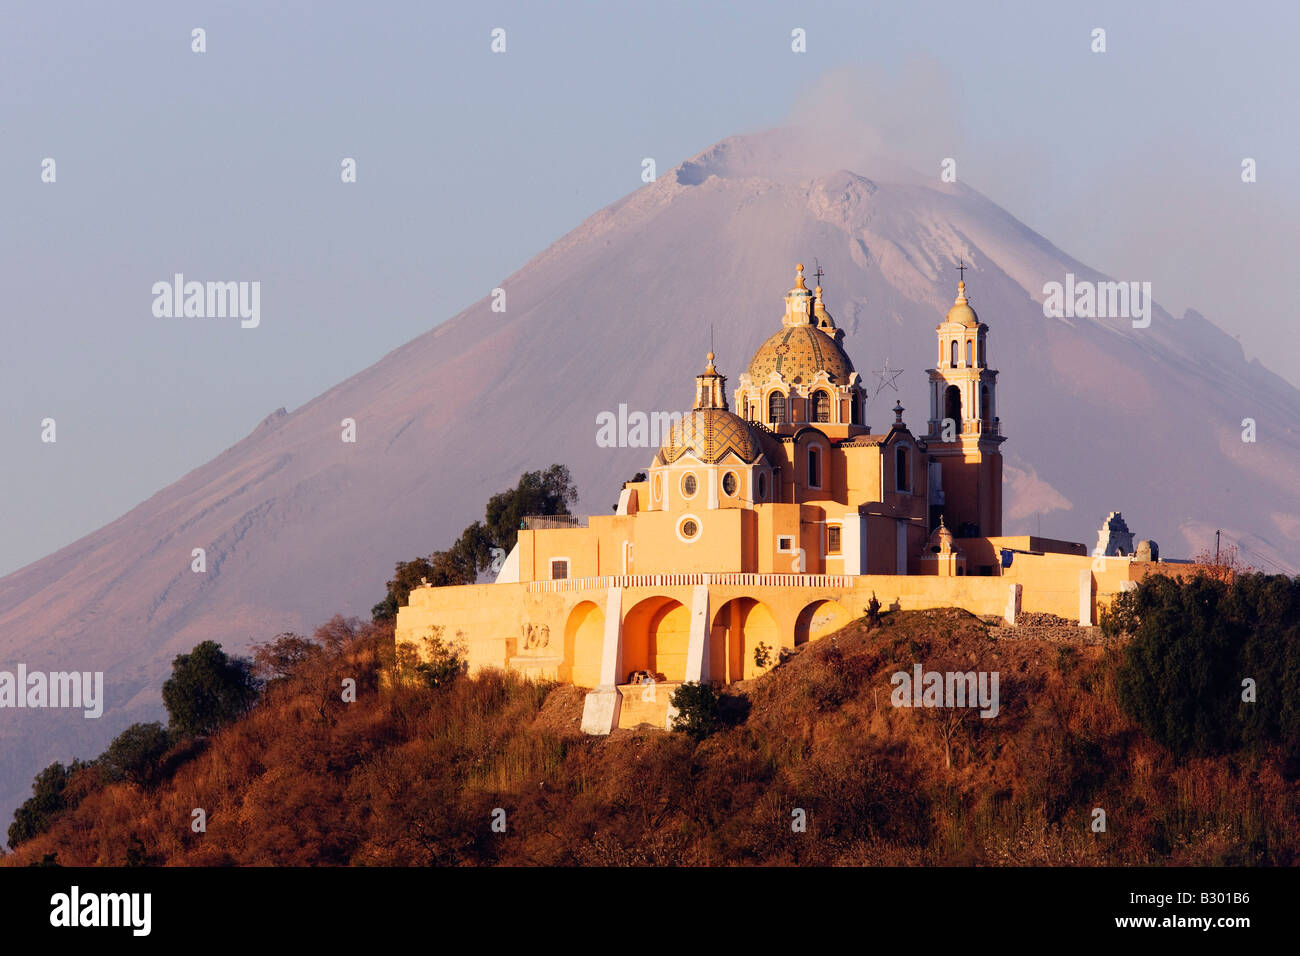 Iglesia de Nuestra Señora de los Remedios, por el volcán Popocatepetl, Cholula, México Foto de stock